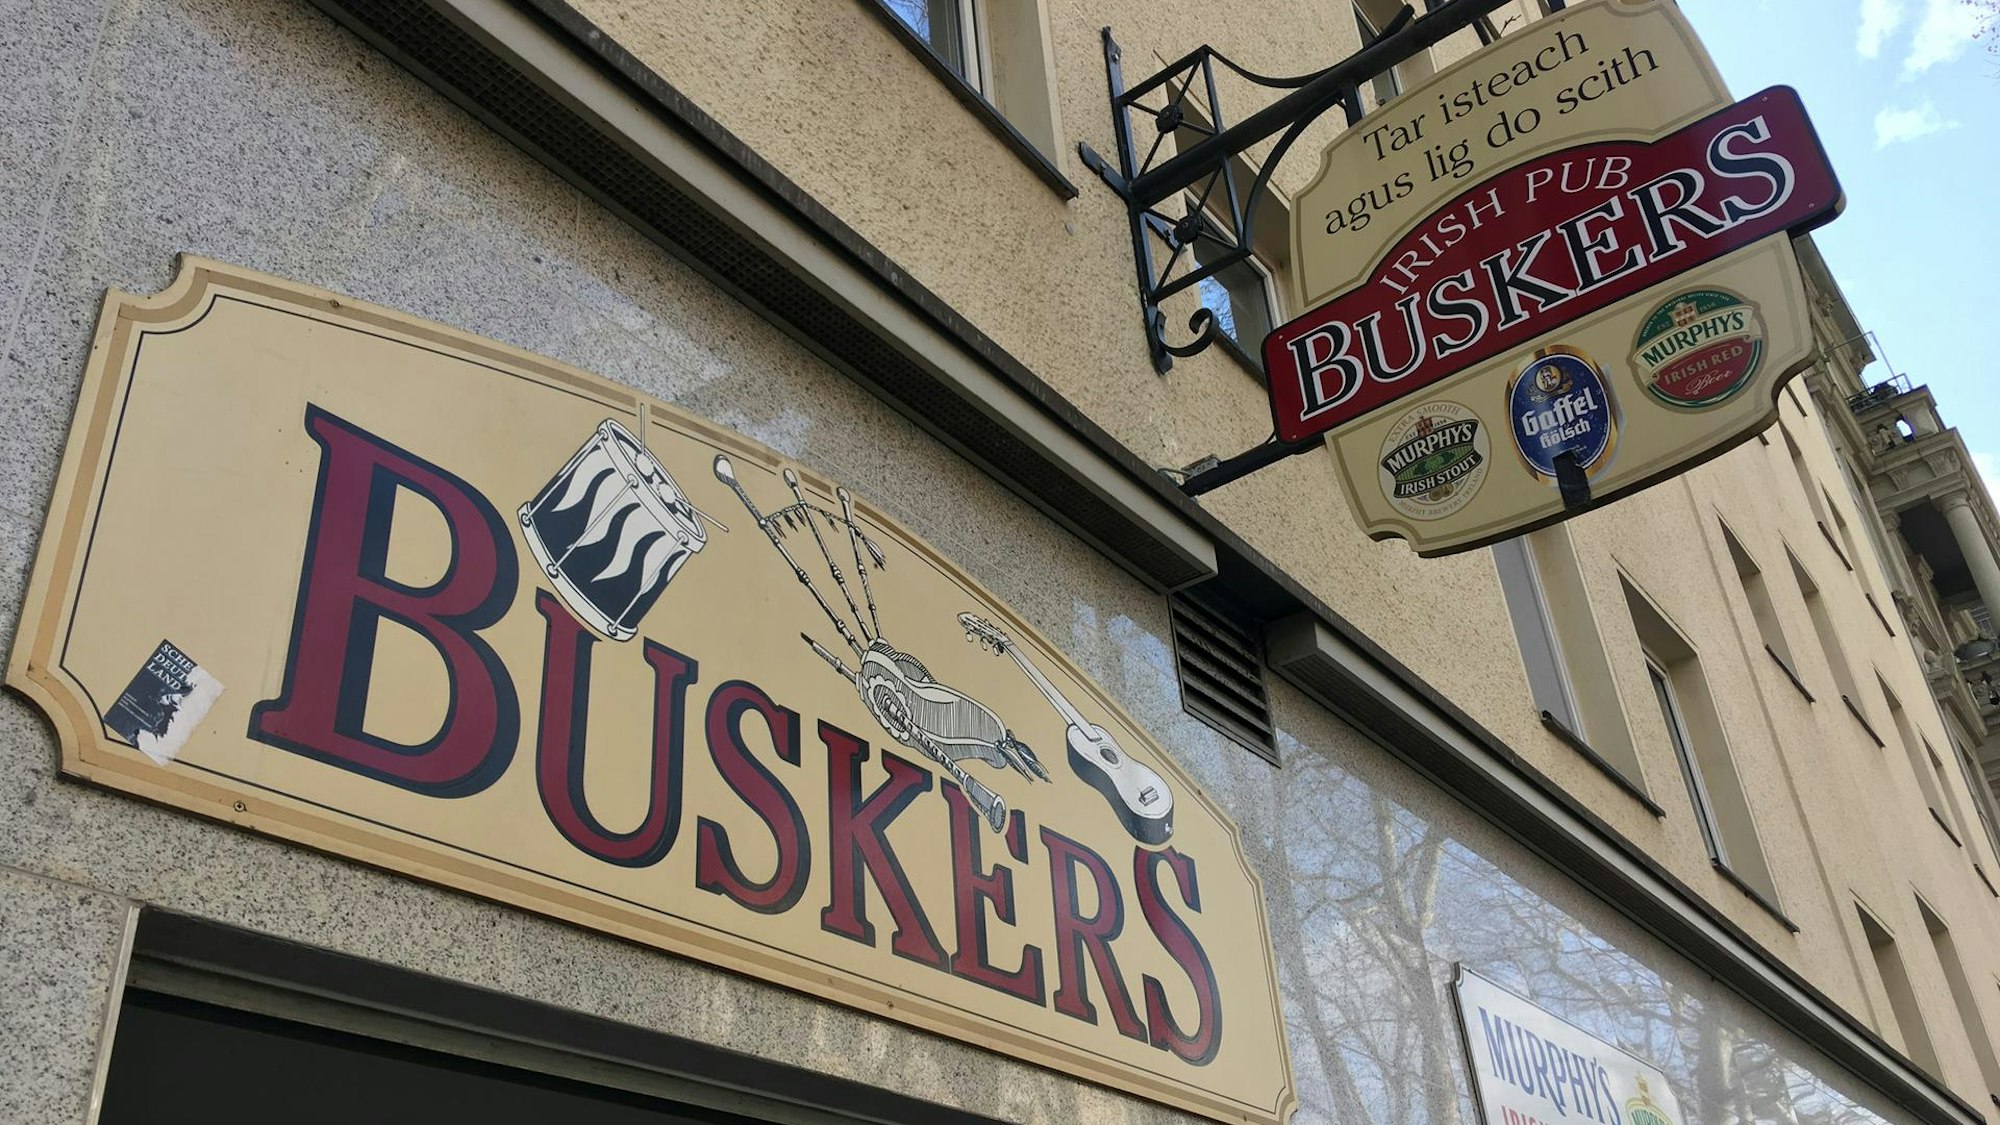 Buskers Irish Pub in Köln